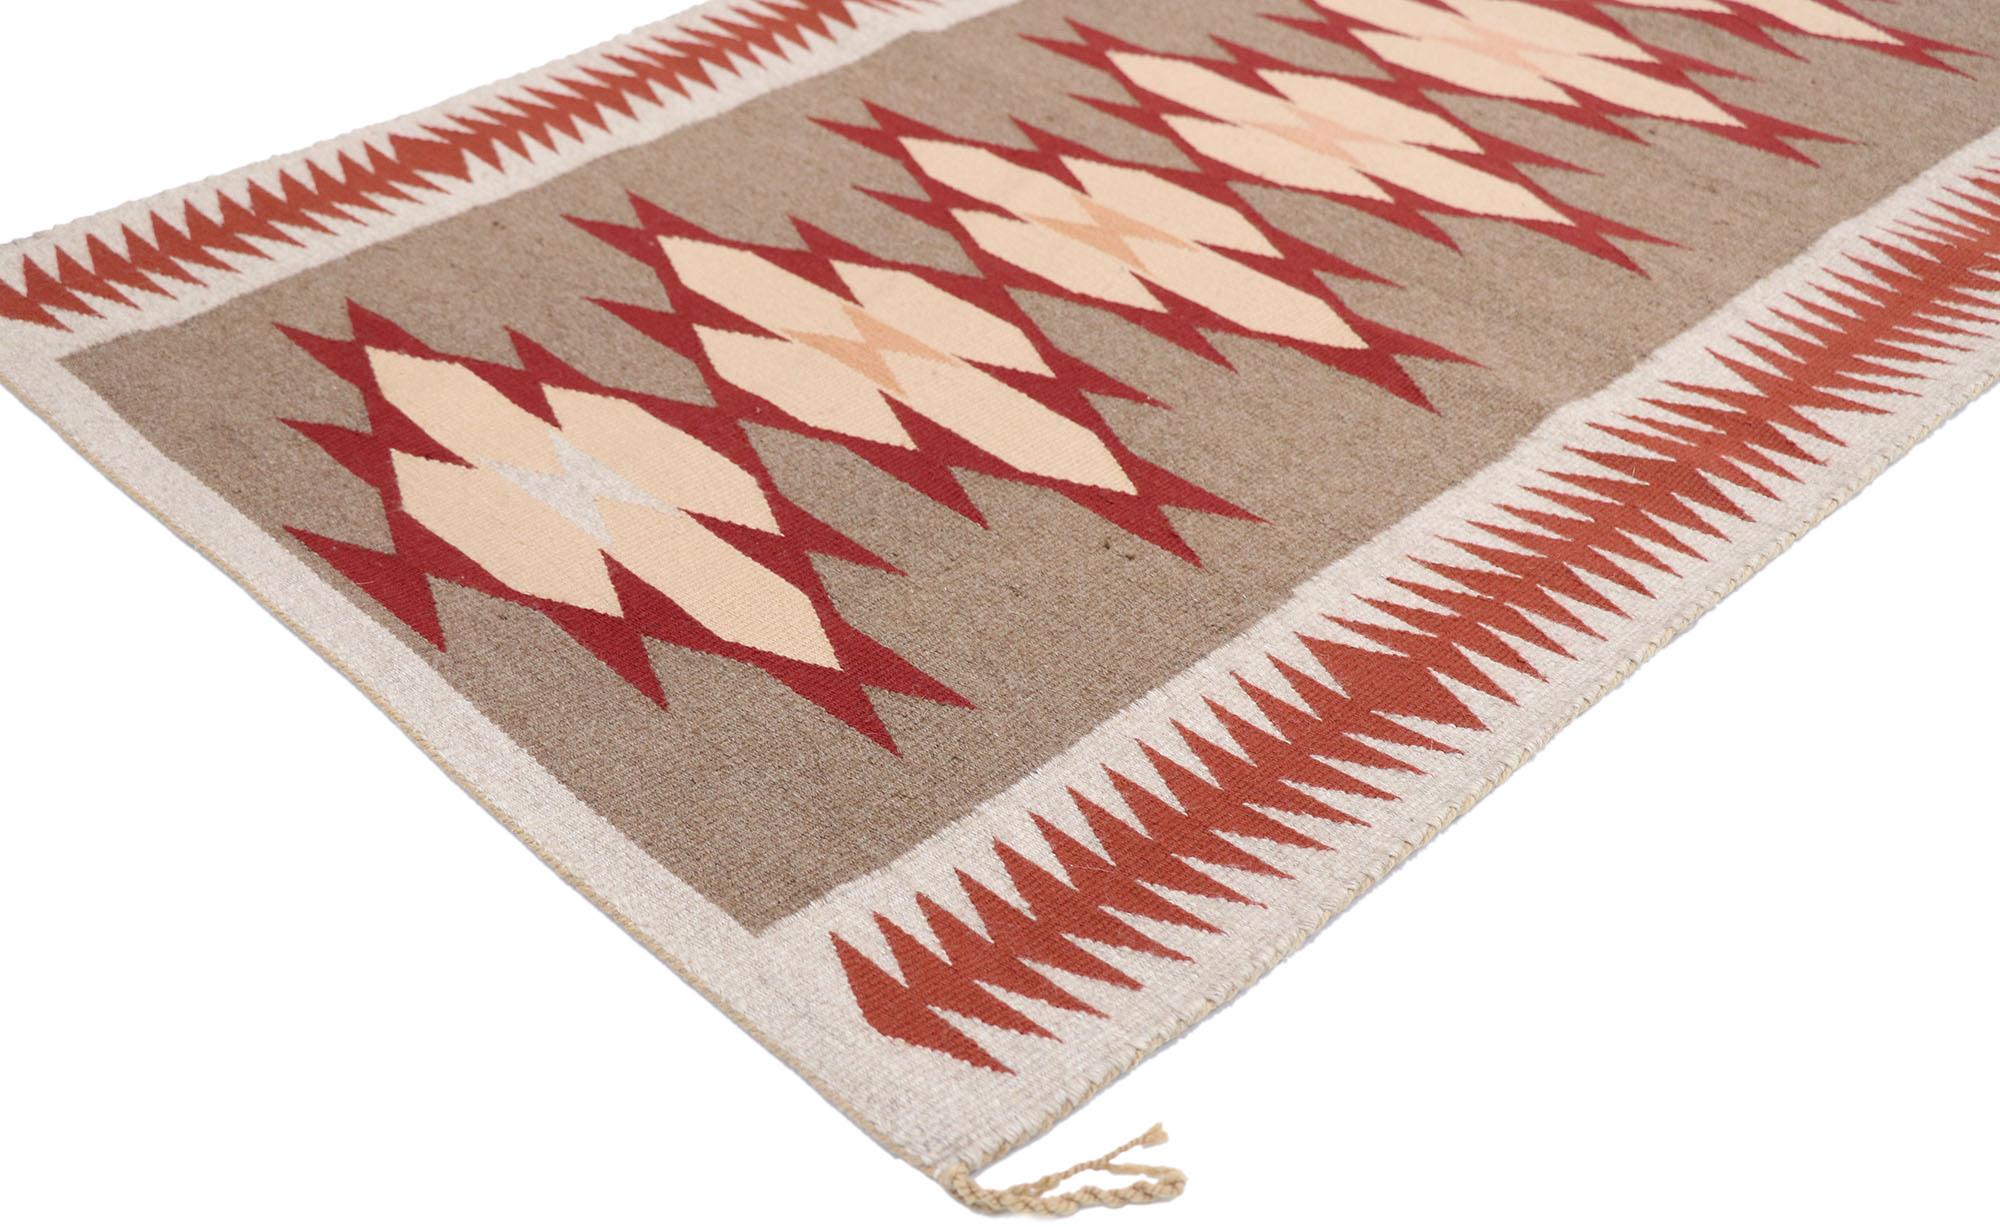 77867 Tapis Vintage Navajo Eye Dazzler, 02'09 x 03'11. Les tapis Navajo Eye Dazzler sont des textiles complexes fabriqués par le peuple Navajo dans le sud-ouest des États-Unis. Ils se caractérisent par leurs couleurs vives et leurs motifs